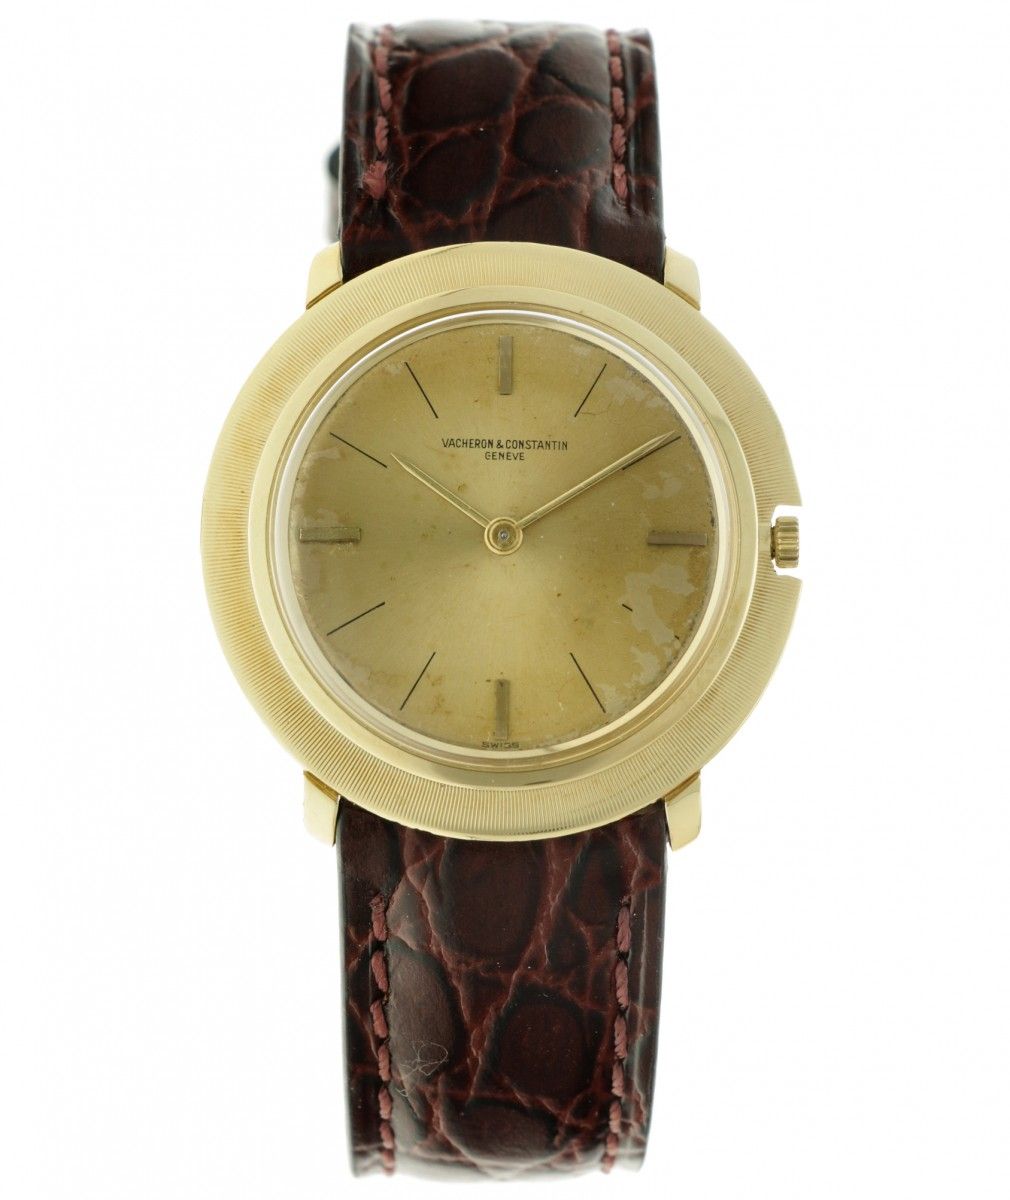 Vacheron & Constantin 6335 - Men's watch - apprx. 1960. Gehäuse: Gelbgold (18 kt&hellip;